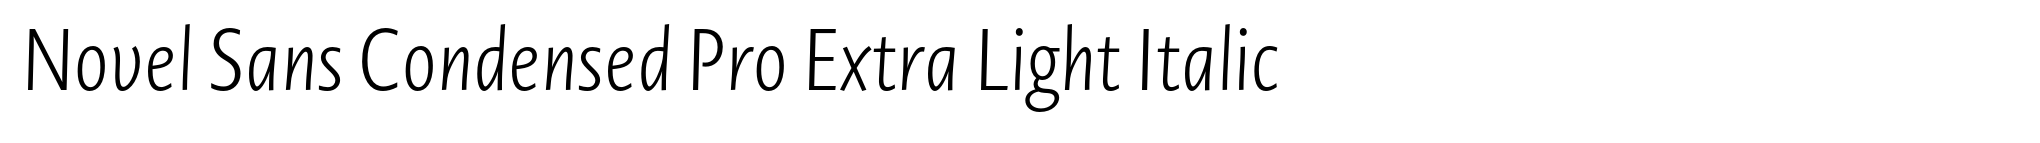 Novel Sans Condensed Pro Extra Light Italic image